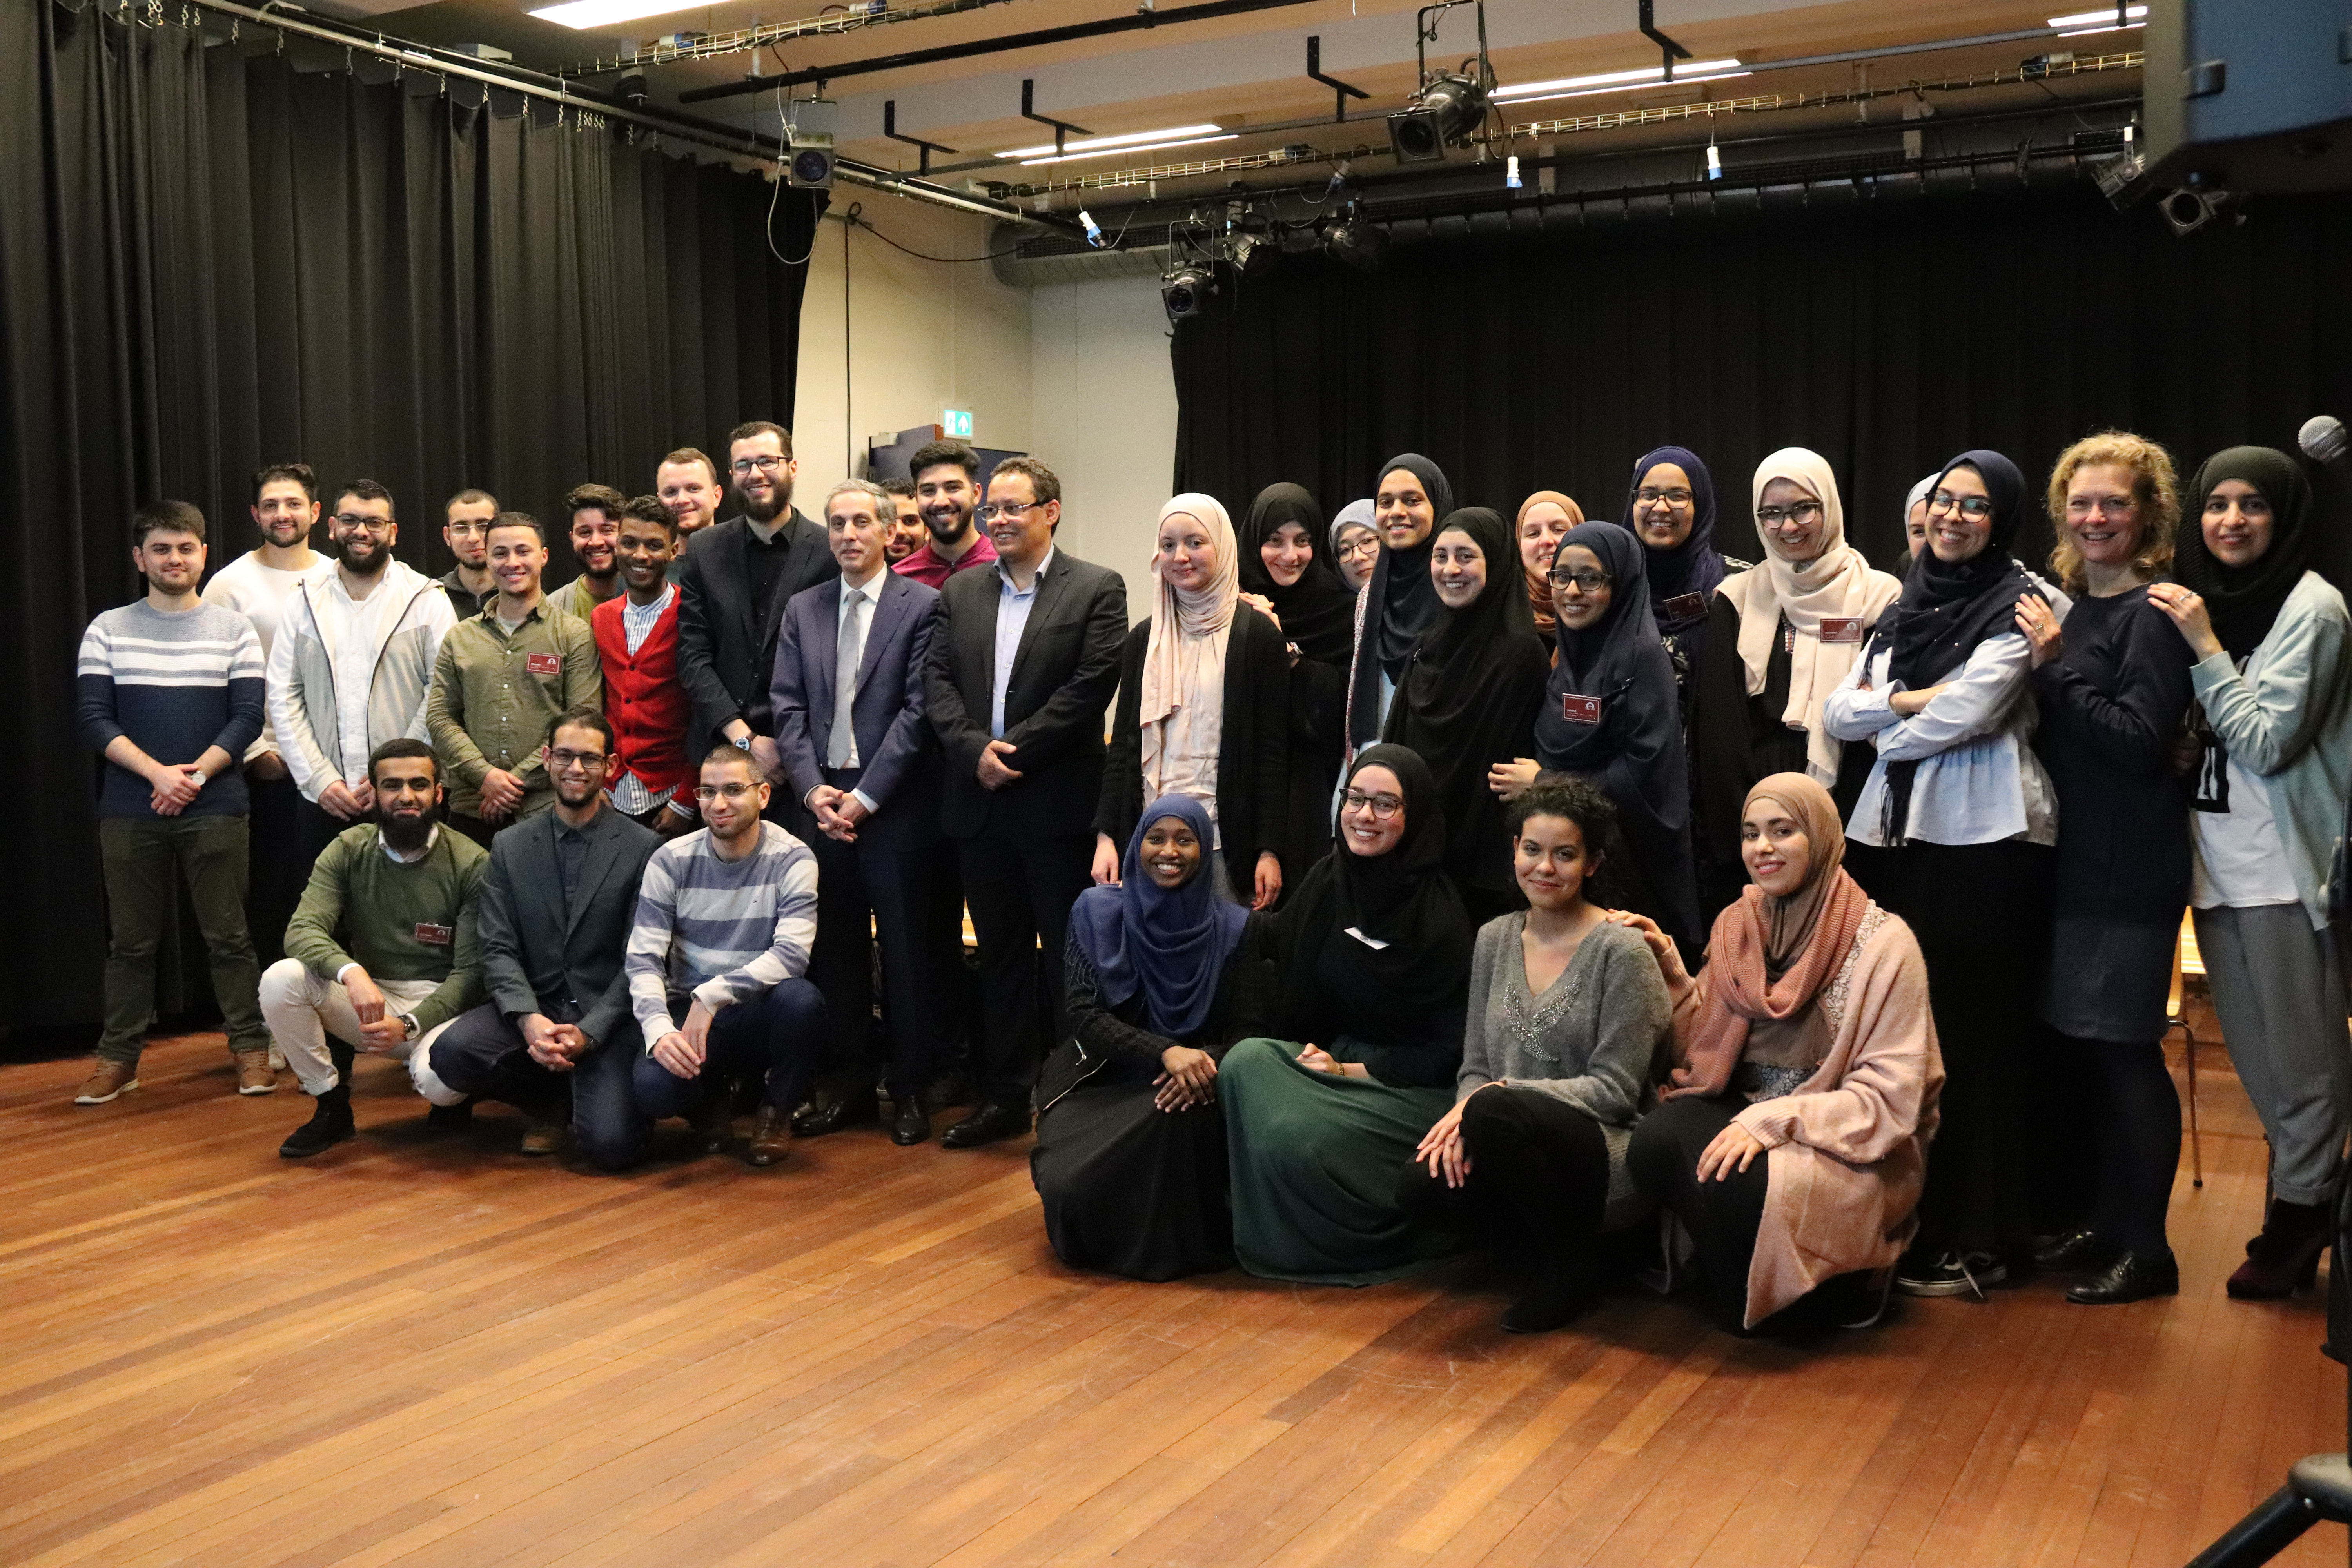 المجلس الأوروبي للعلماء المغاربة ينظم لقاء تواصليا بالتعاون مع جمعية الطلبة المغاربة المسلمين بهولندا مع مجموعة من الكفاءات المغربية.